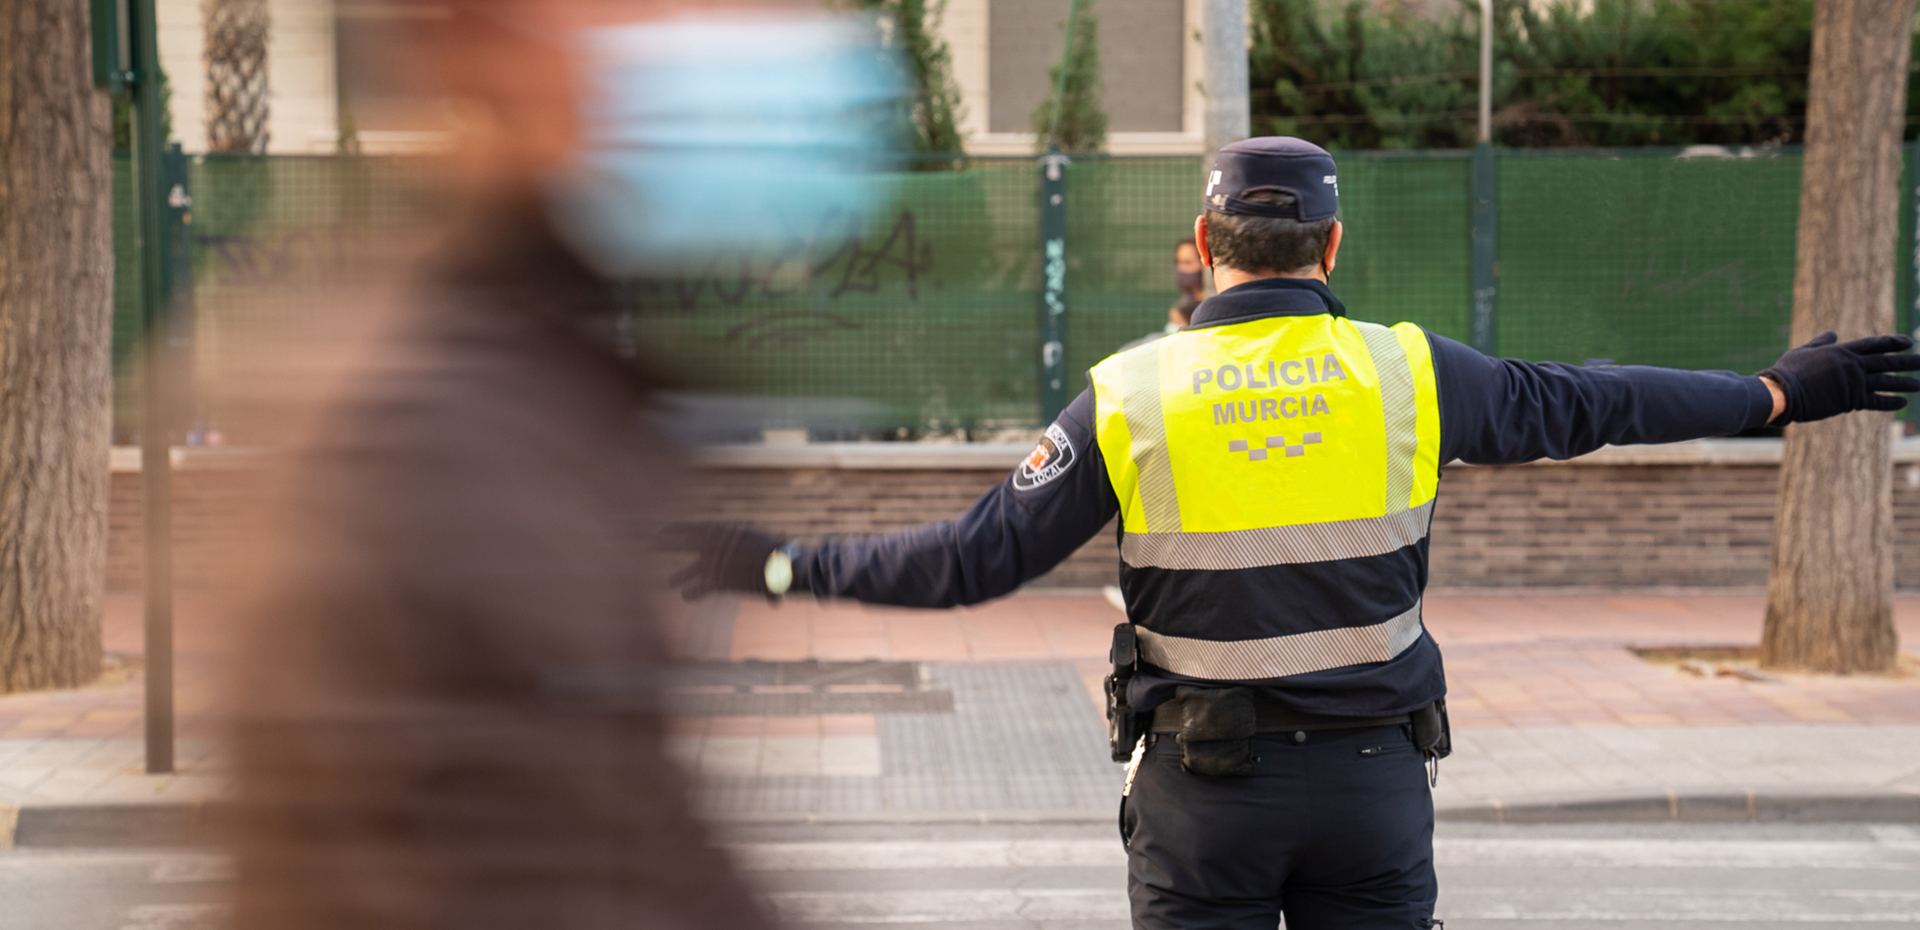 Agente de policía regulando el tráfico en un paso de peatones